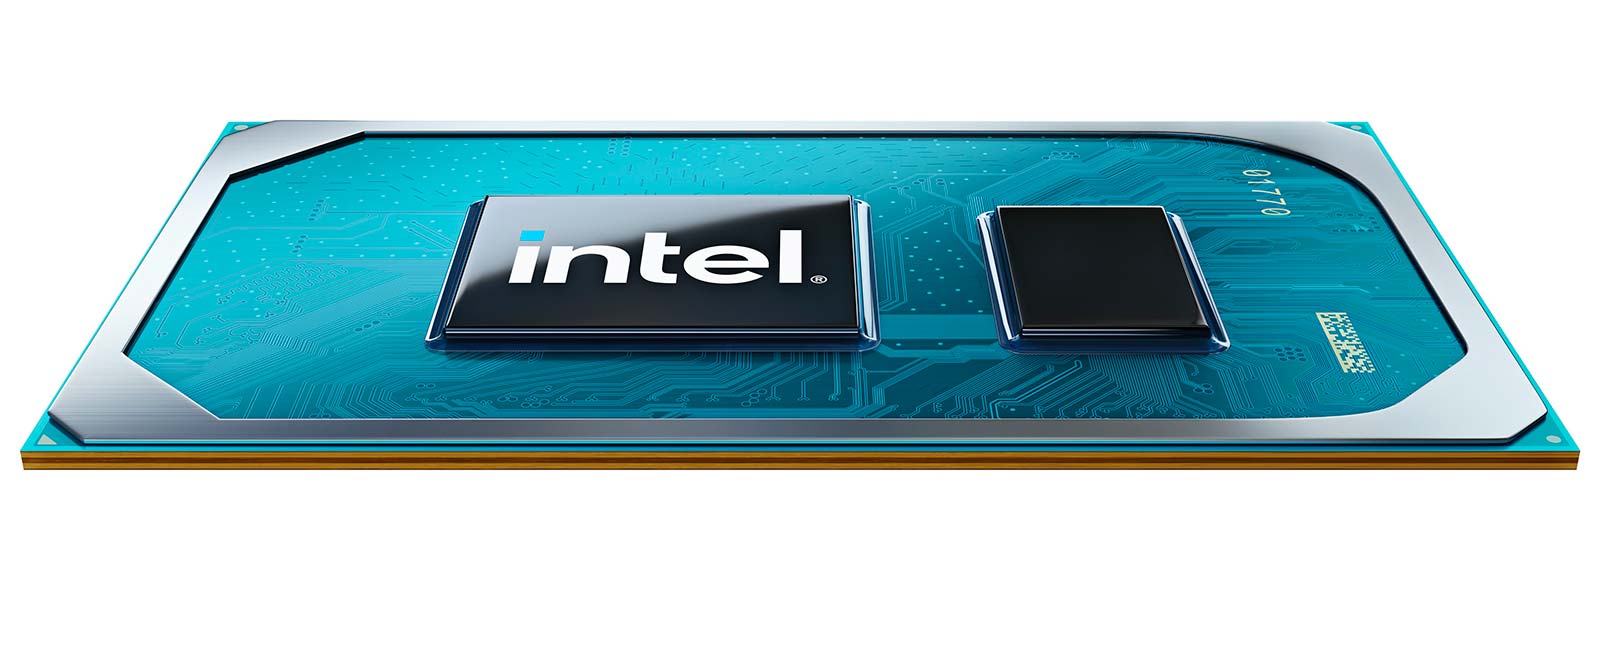 Intel H35 chips